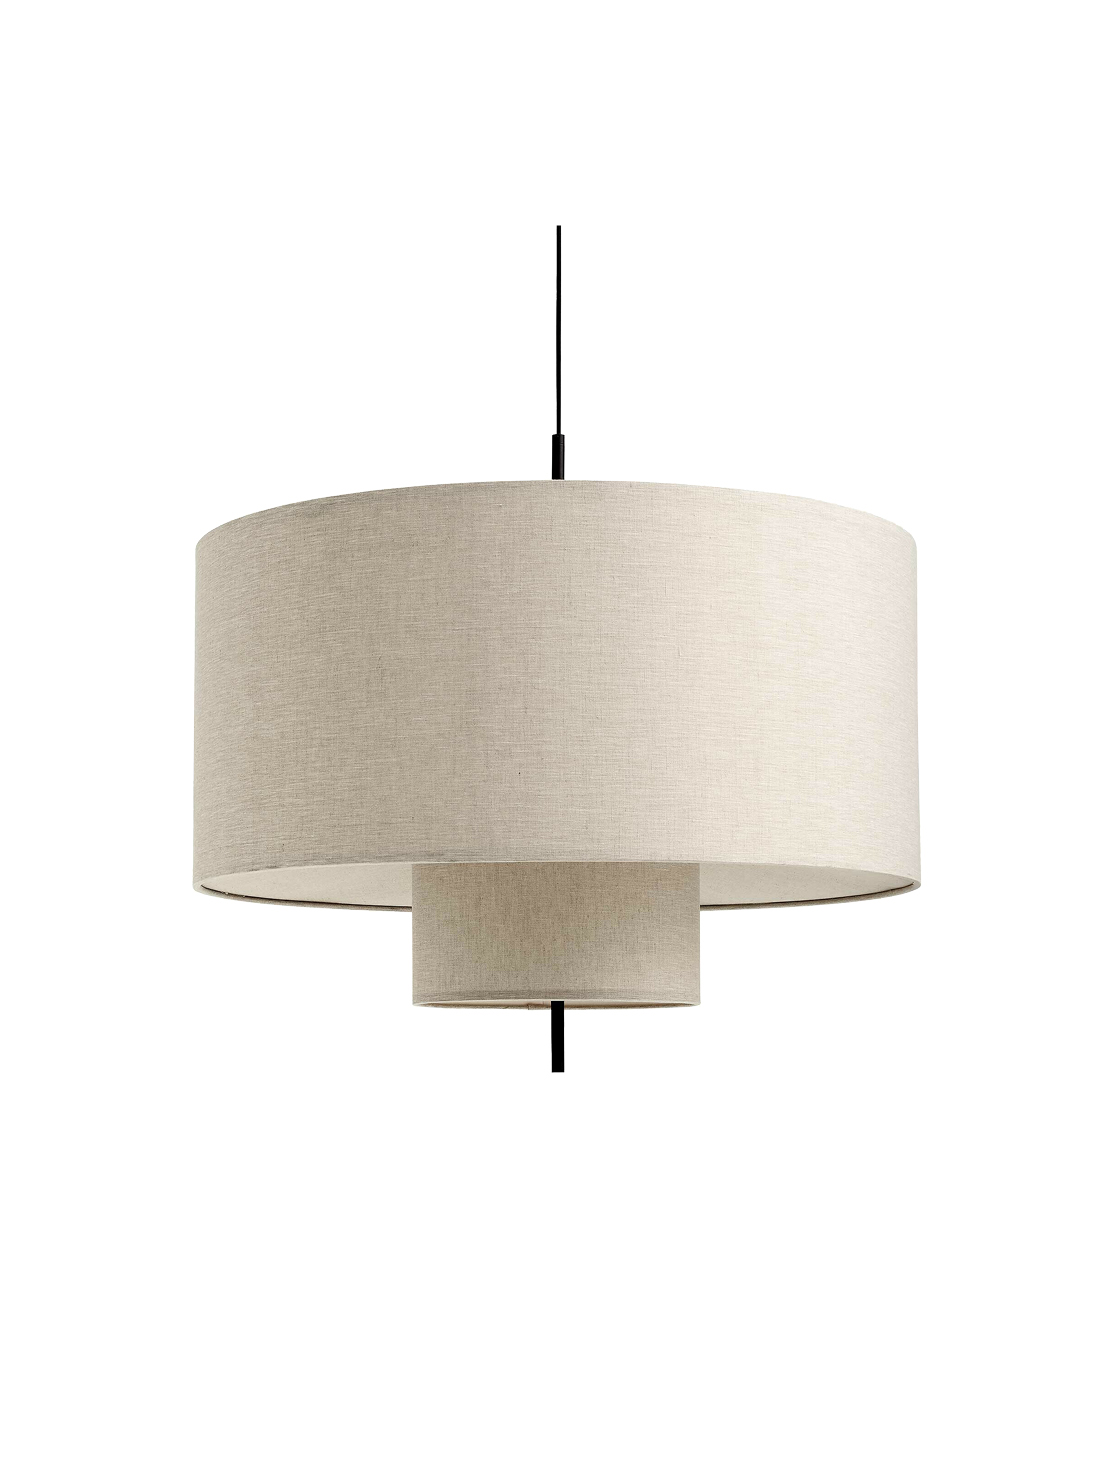 New Works Margin Pendant Ceiling Lamp, Linen 90cm